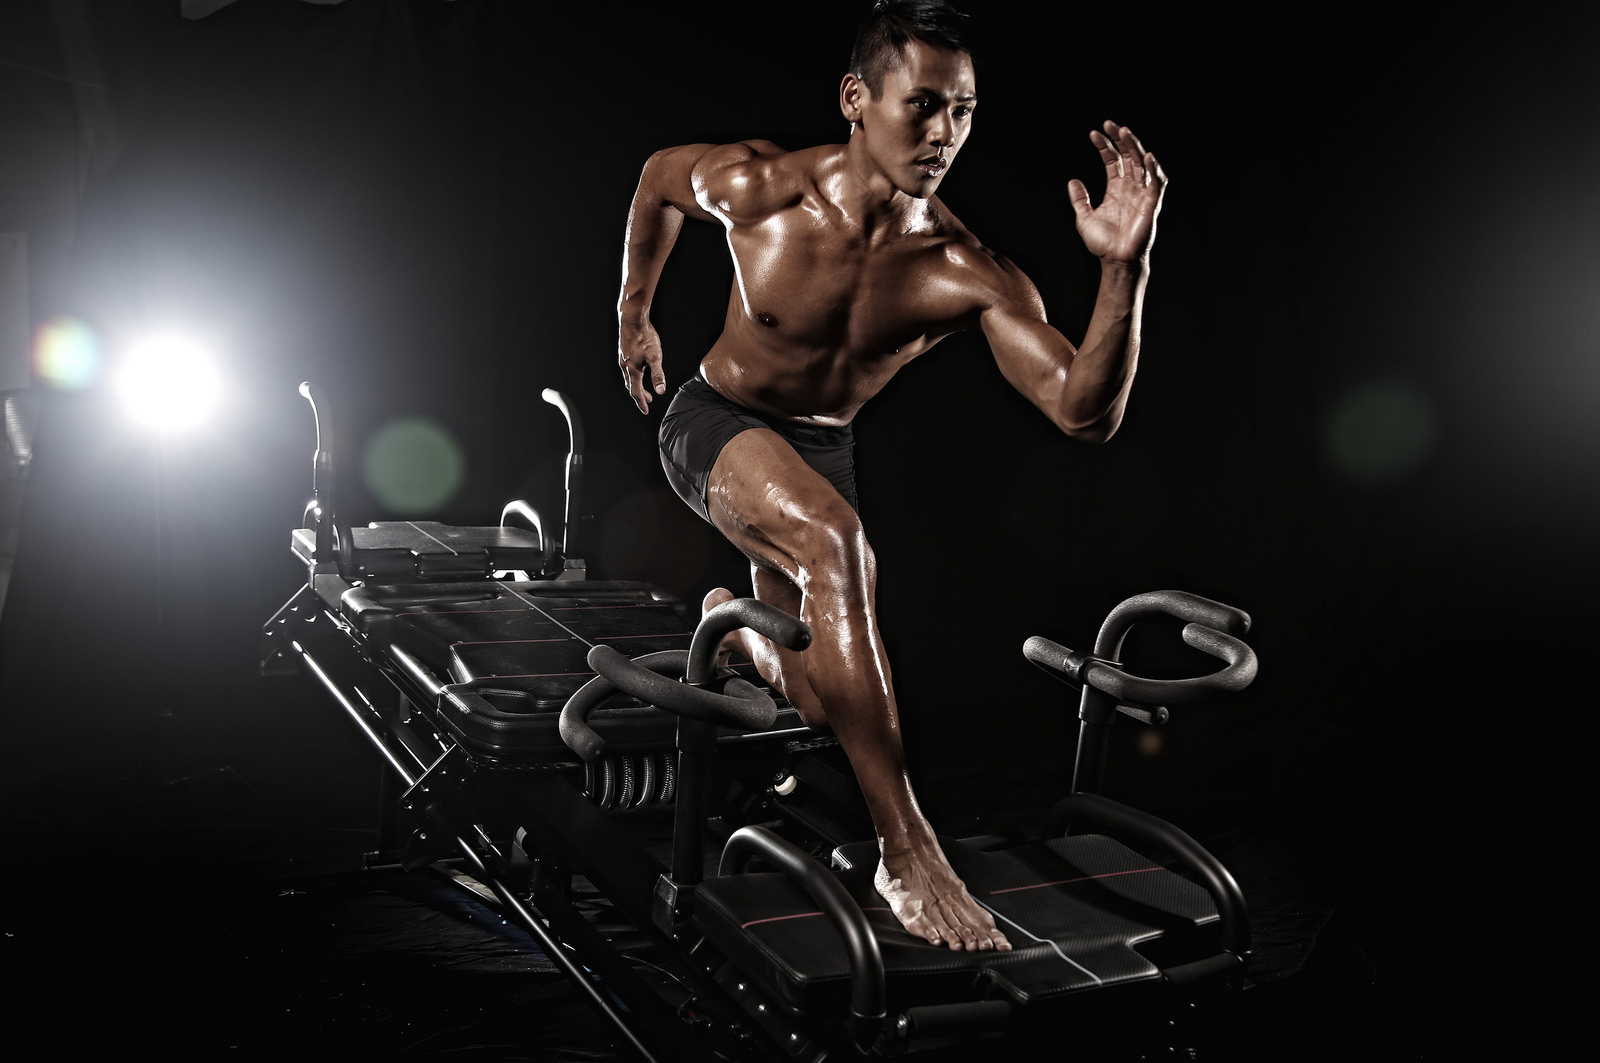 A man running on a treadmill in the dark.